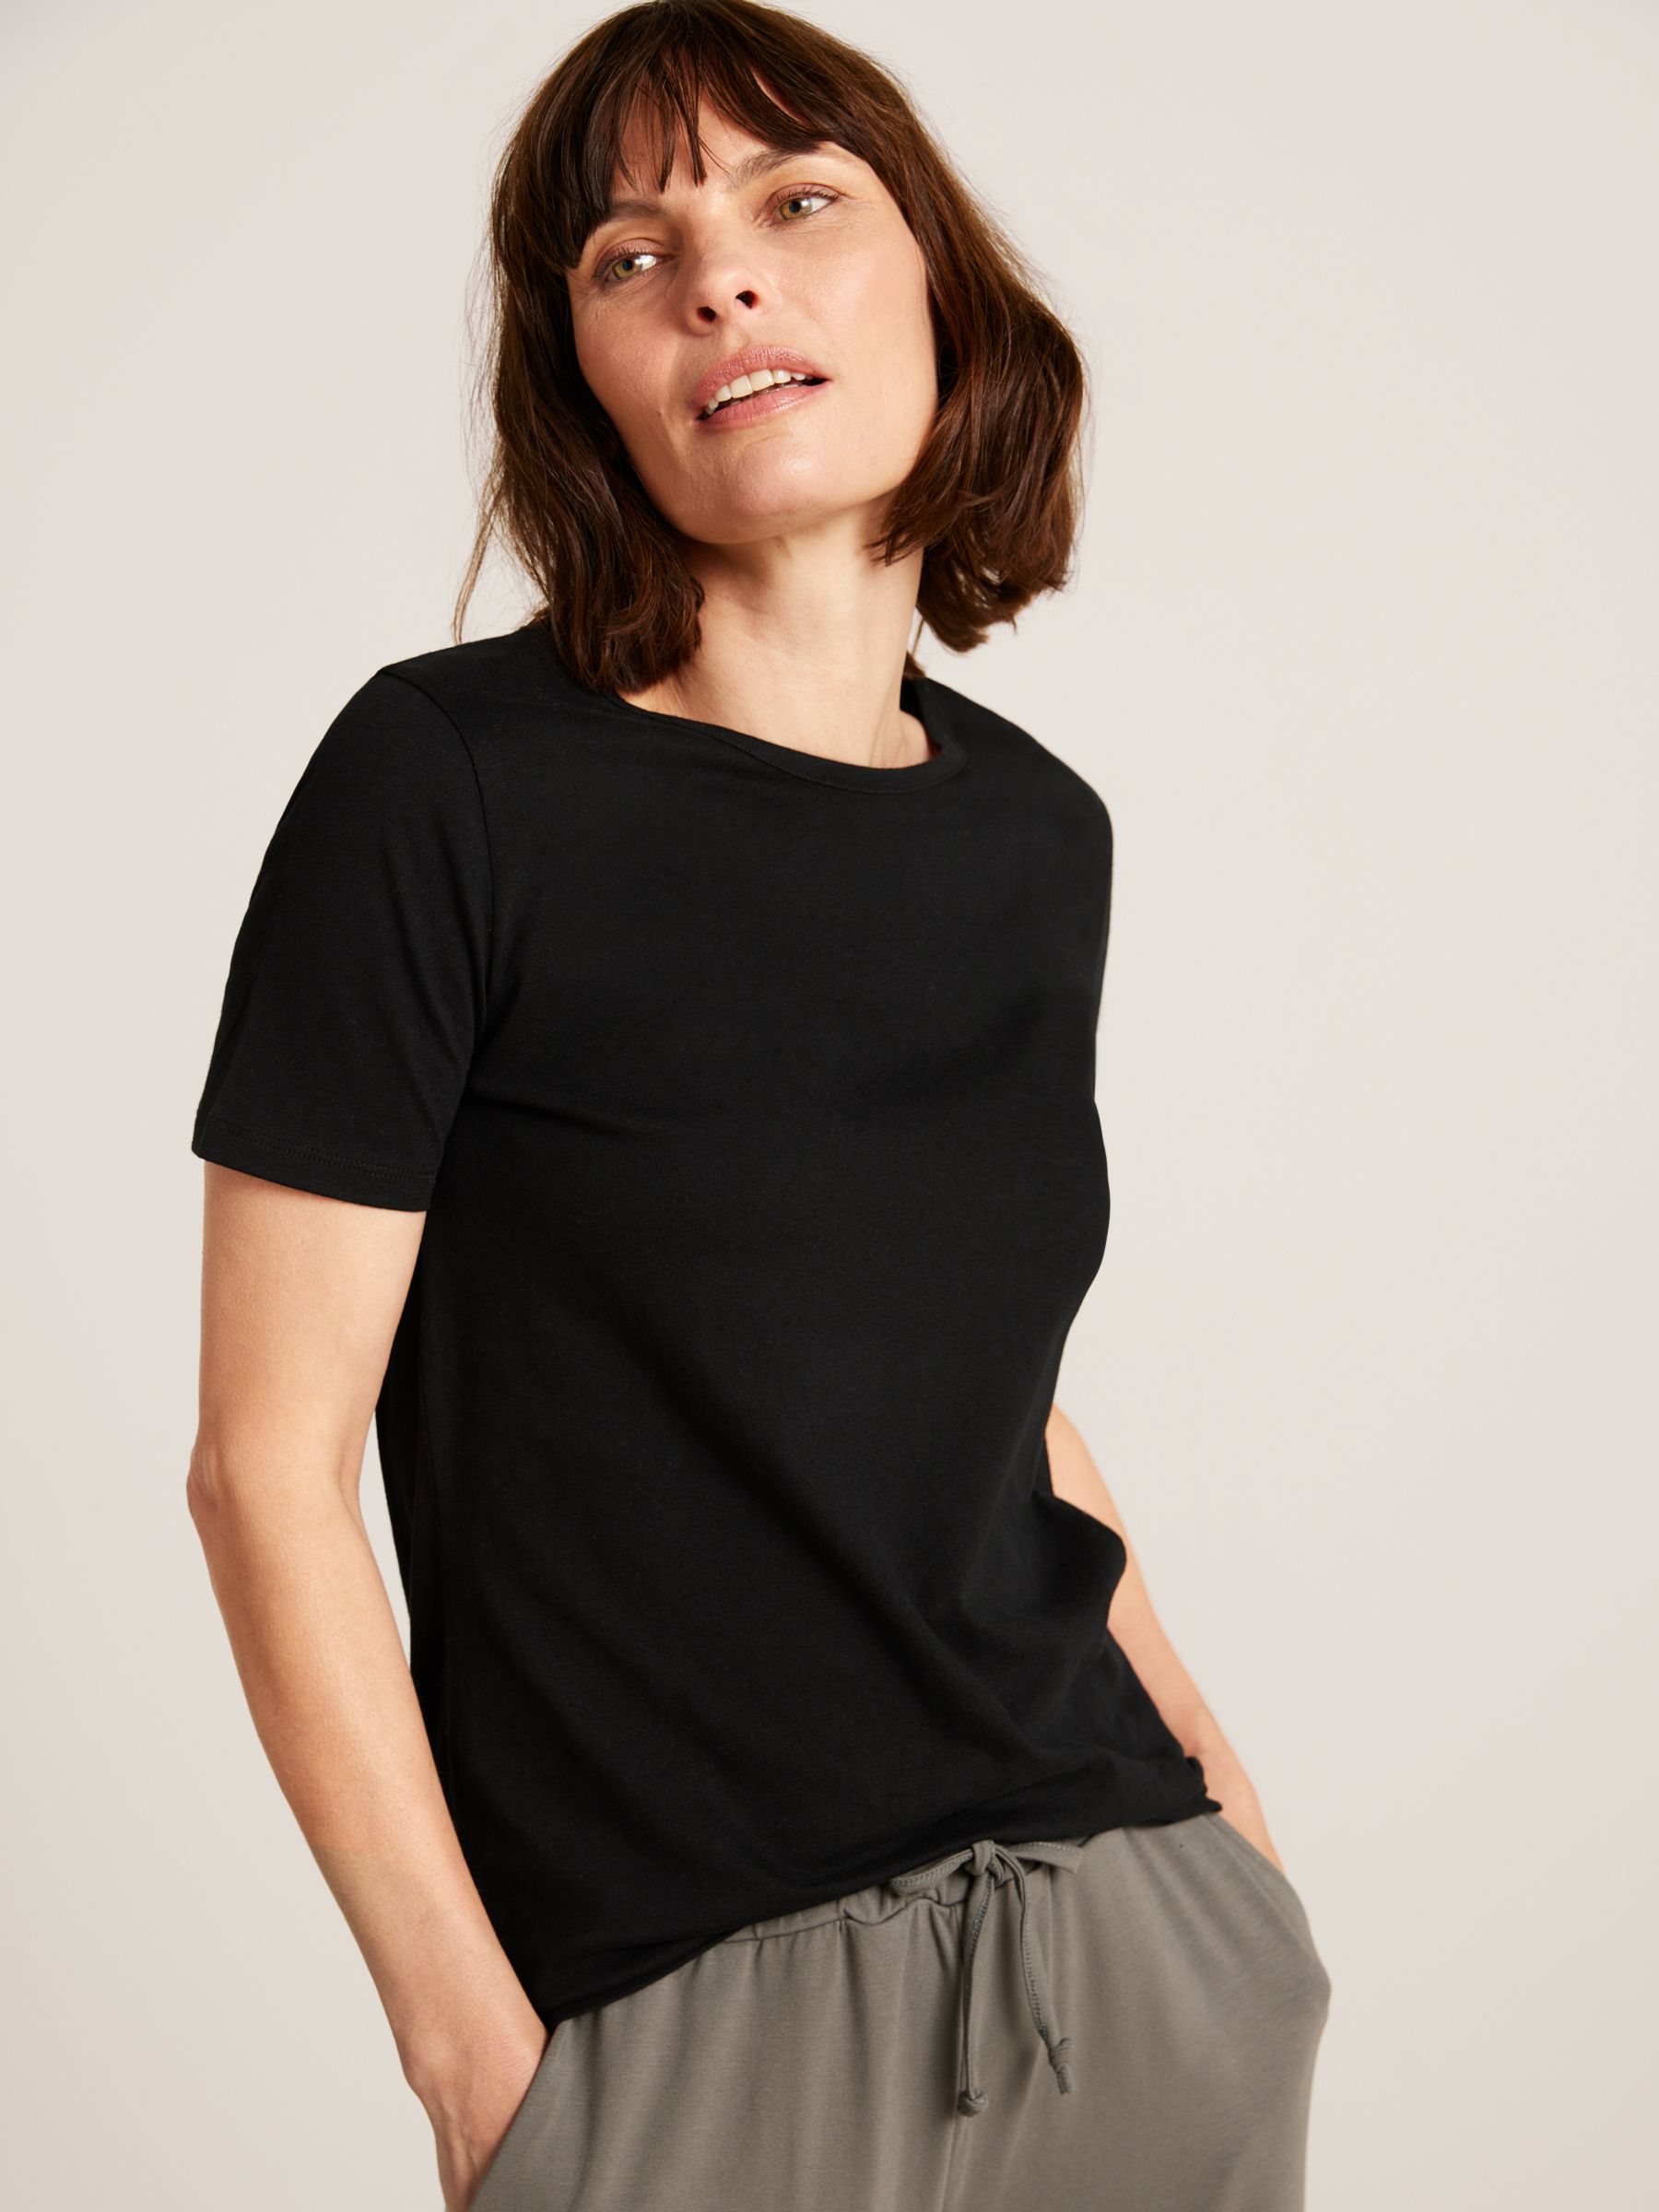 Green XS discount 72% Natura T-shirt WOMEN FASHION Shirts & T-shirts T-shirt Basic 